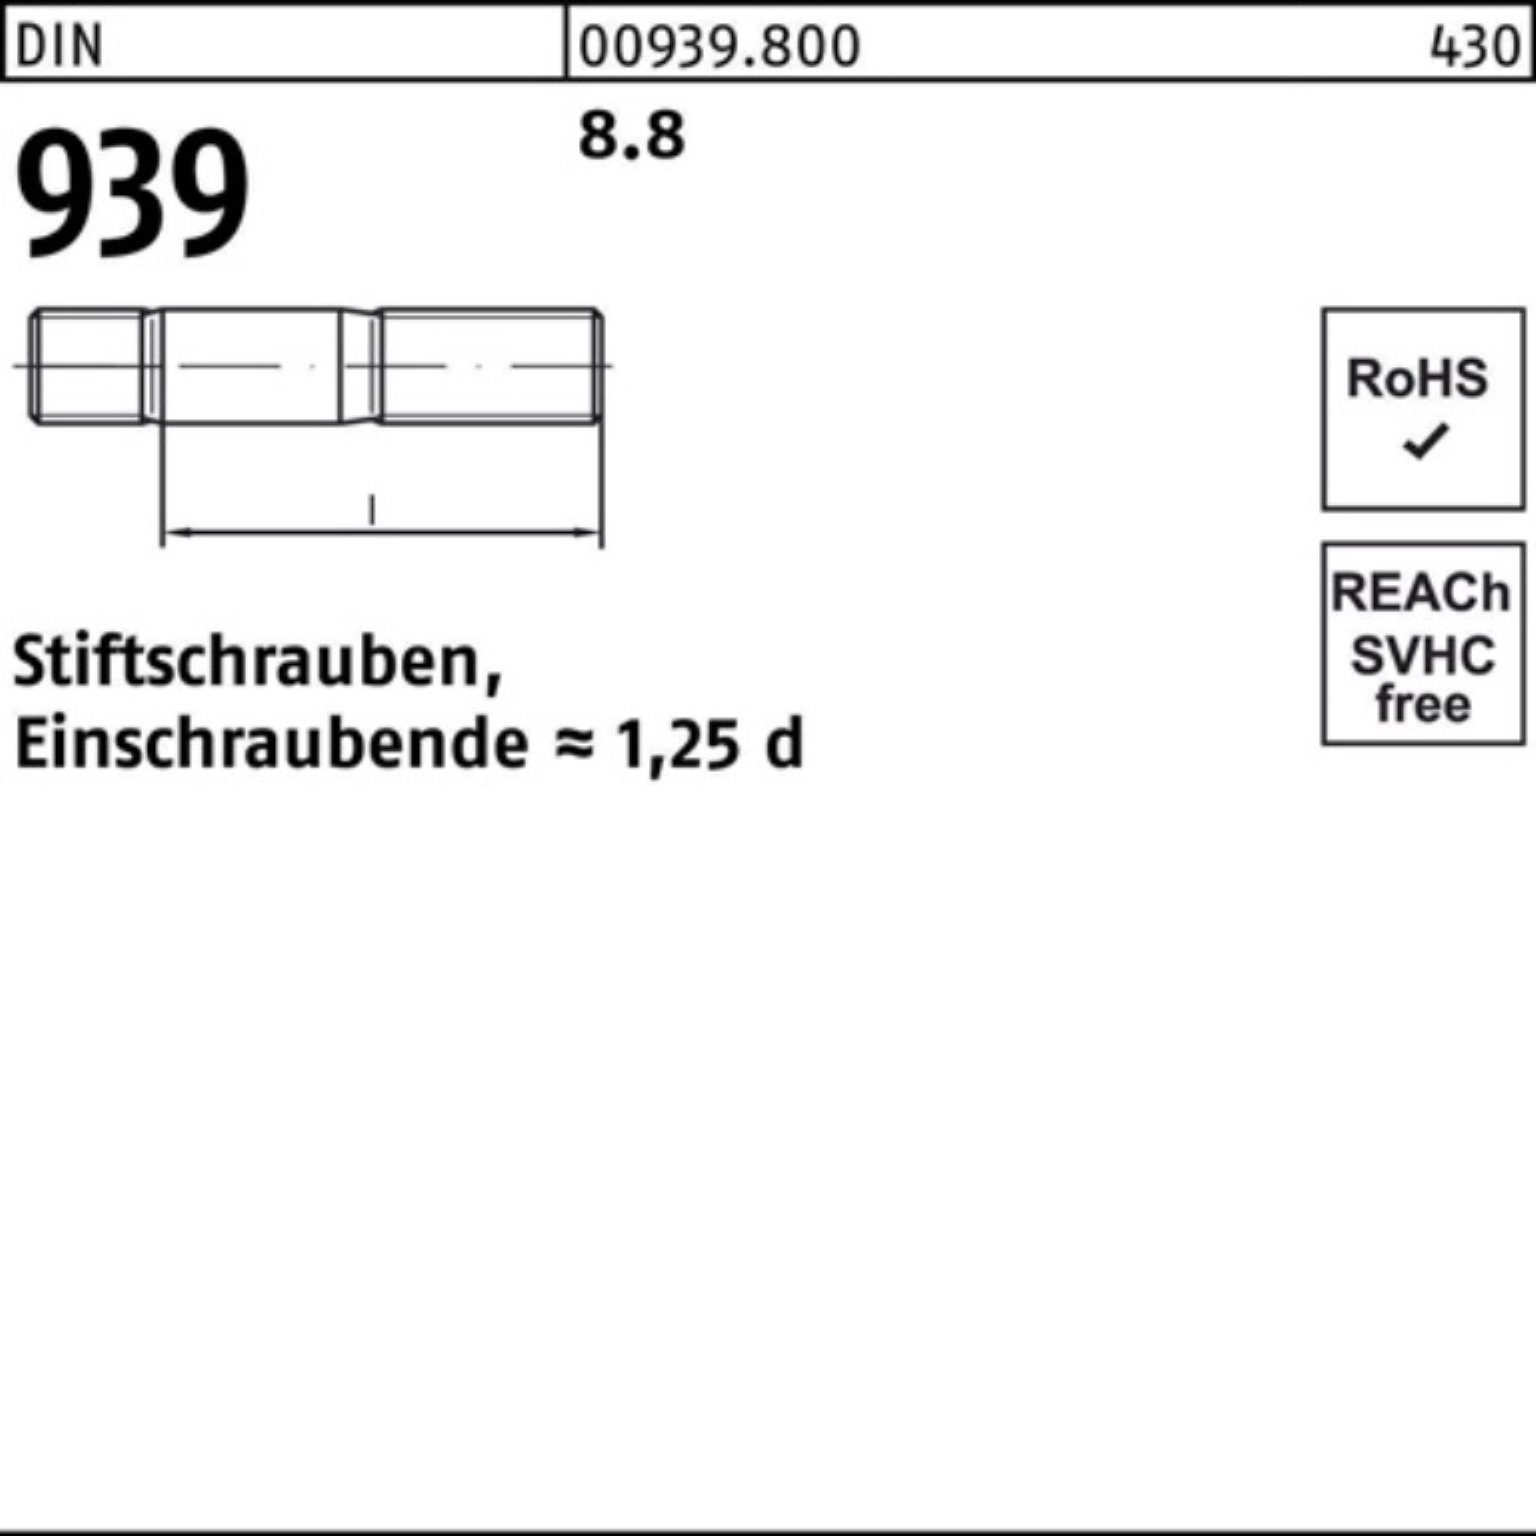 Reyher Stiftschraube 100er Pack 10 S 939 M20x DIN Stiftschraube 8.8 60 Einschraubende=1,25d